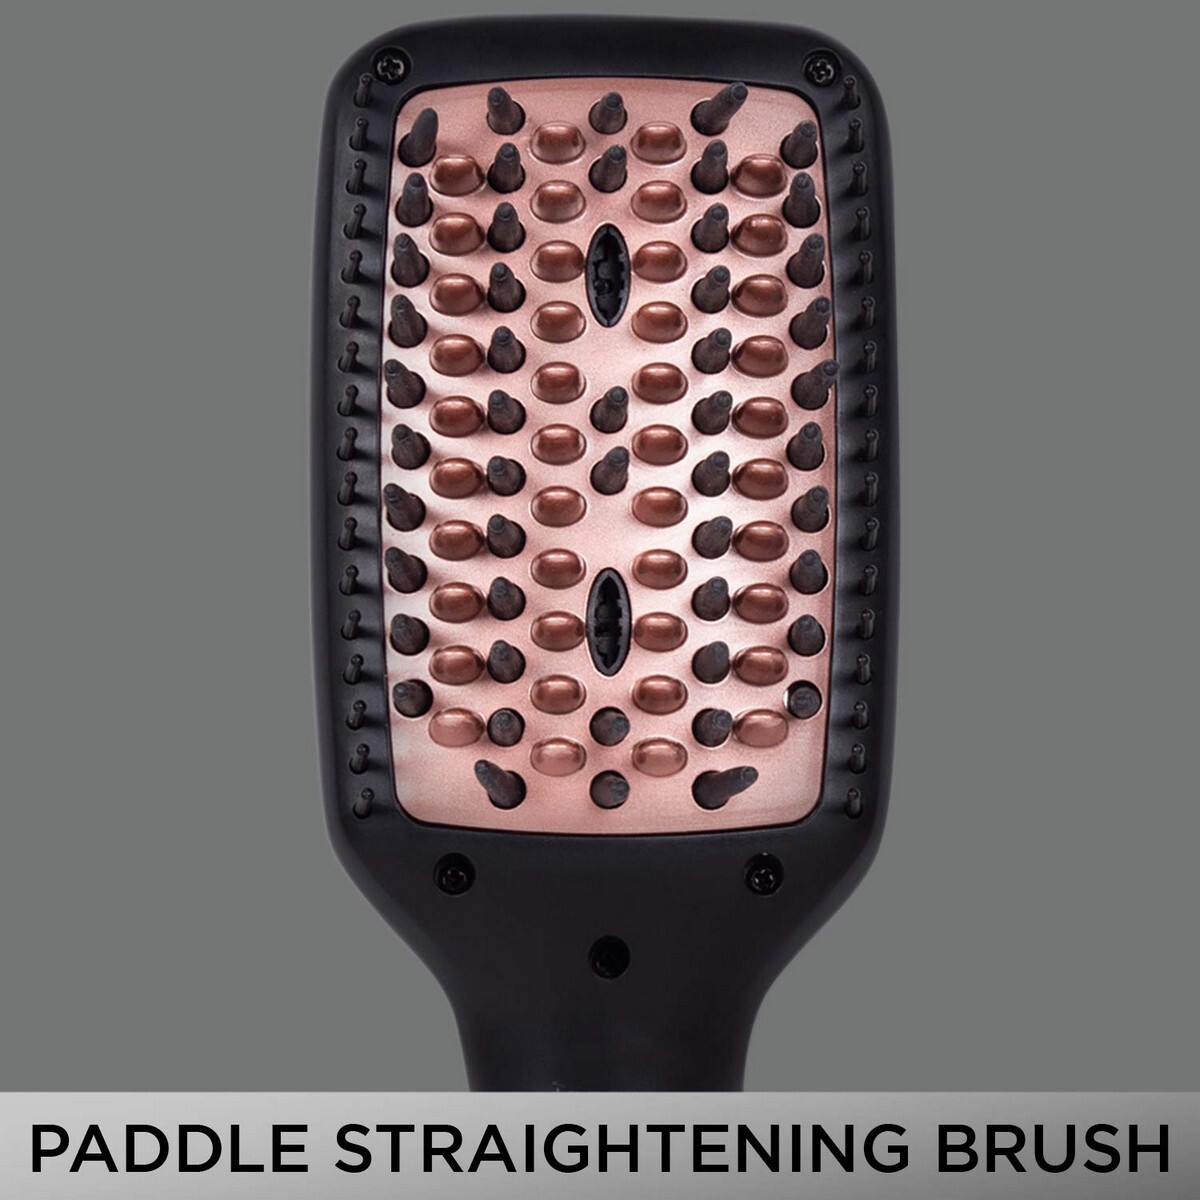 VEGA X-Look Paddle Straightening Brush VHSB-02 Hair Straightener Black